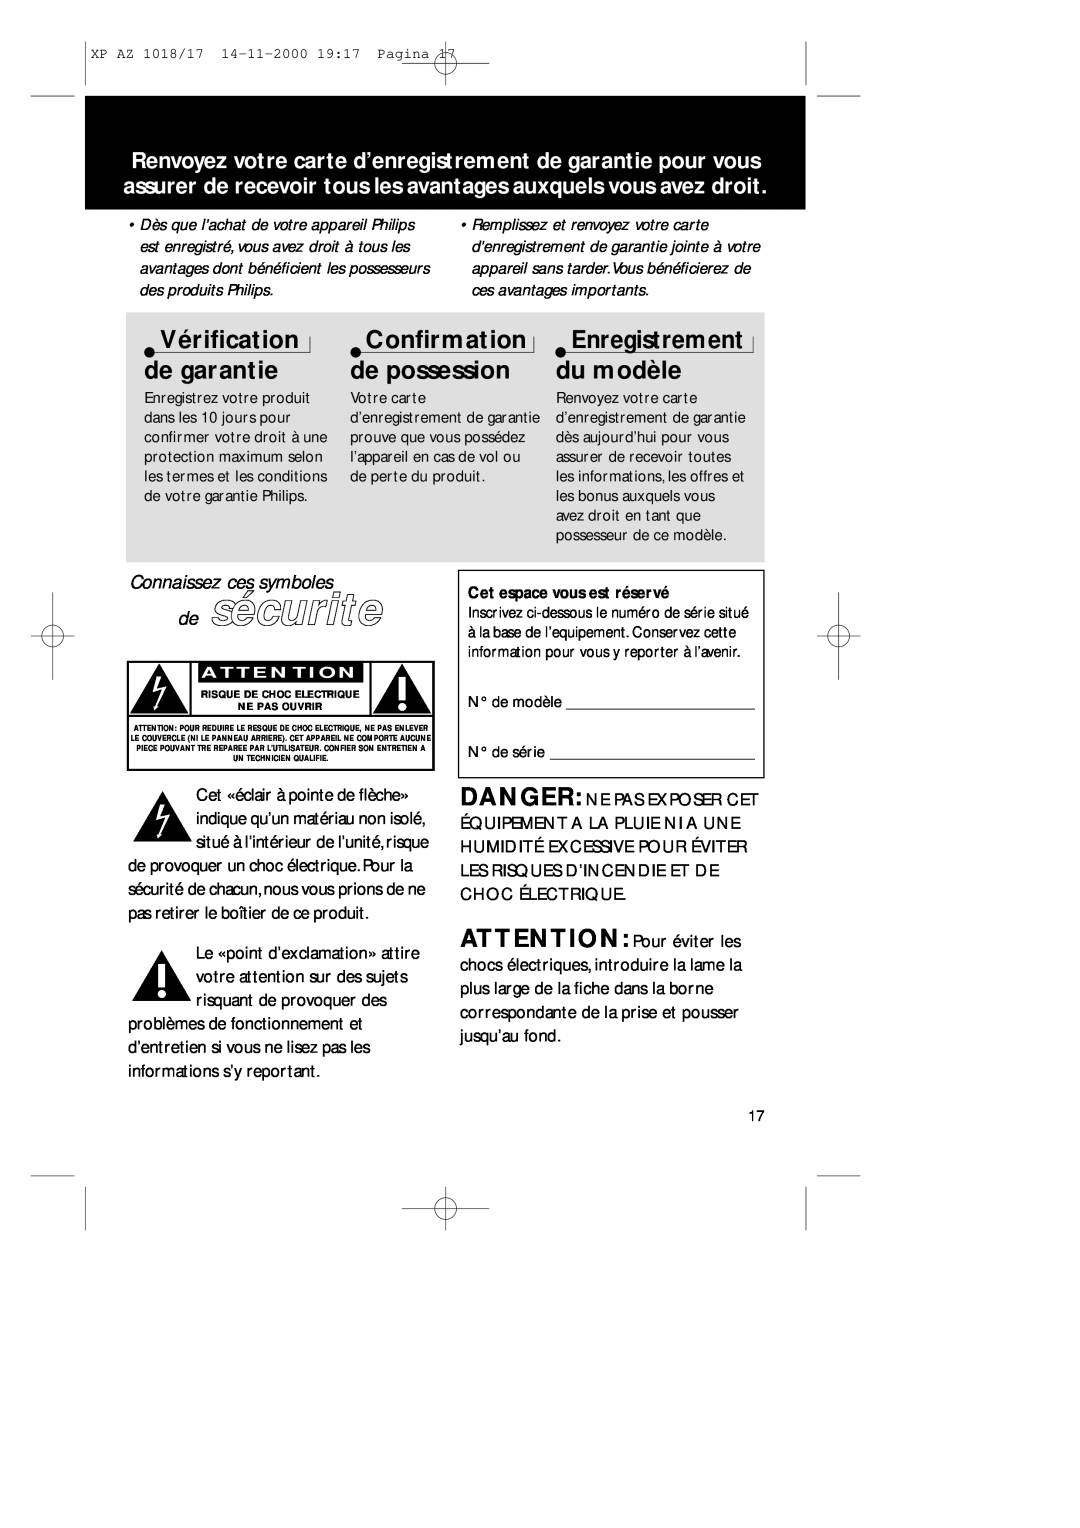 Philips 1018 manual de sécurite, Vériﬁcation de garantie, Conﬁrmation de possession, Connaissez ces symboles 